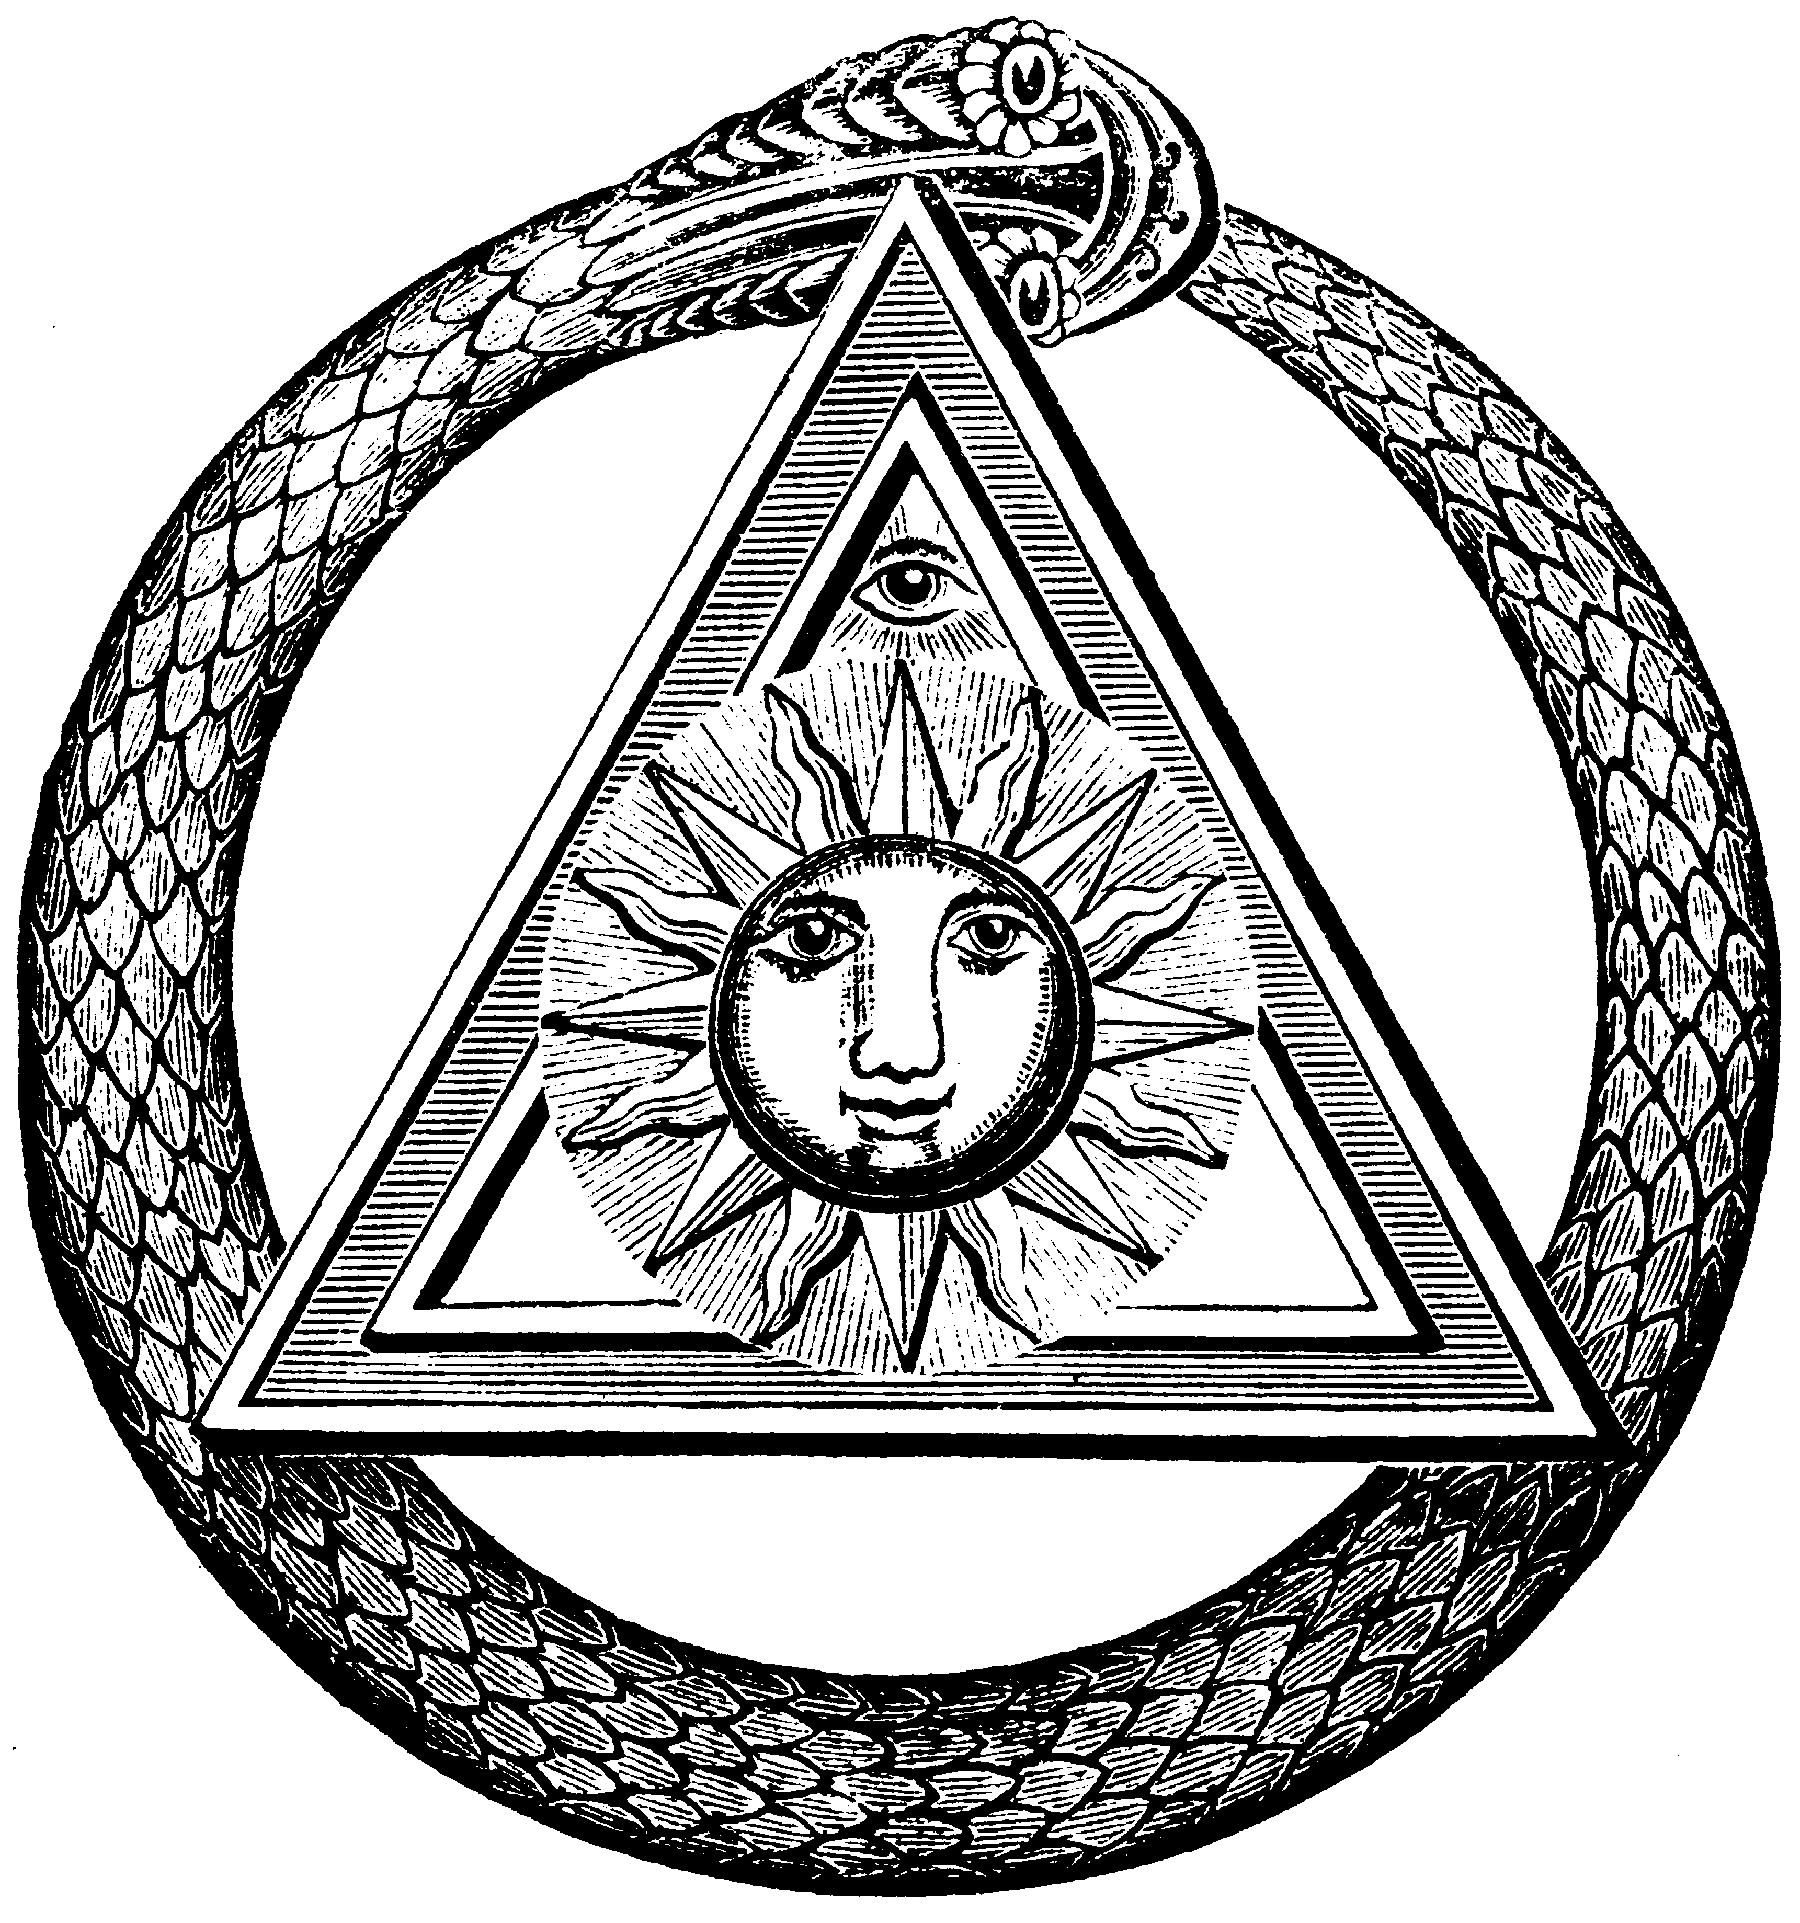 Un authentique tatouage franc-maçon, avec les symboles propres à ce mouvement : soleil, serpent, triangle, oeil ... Intriguant mais à colorier